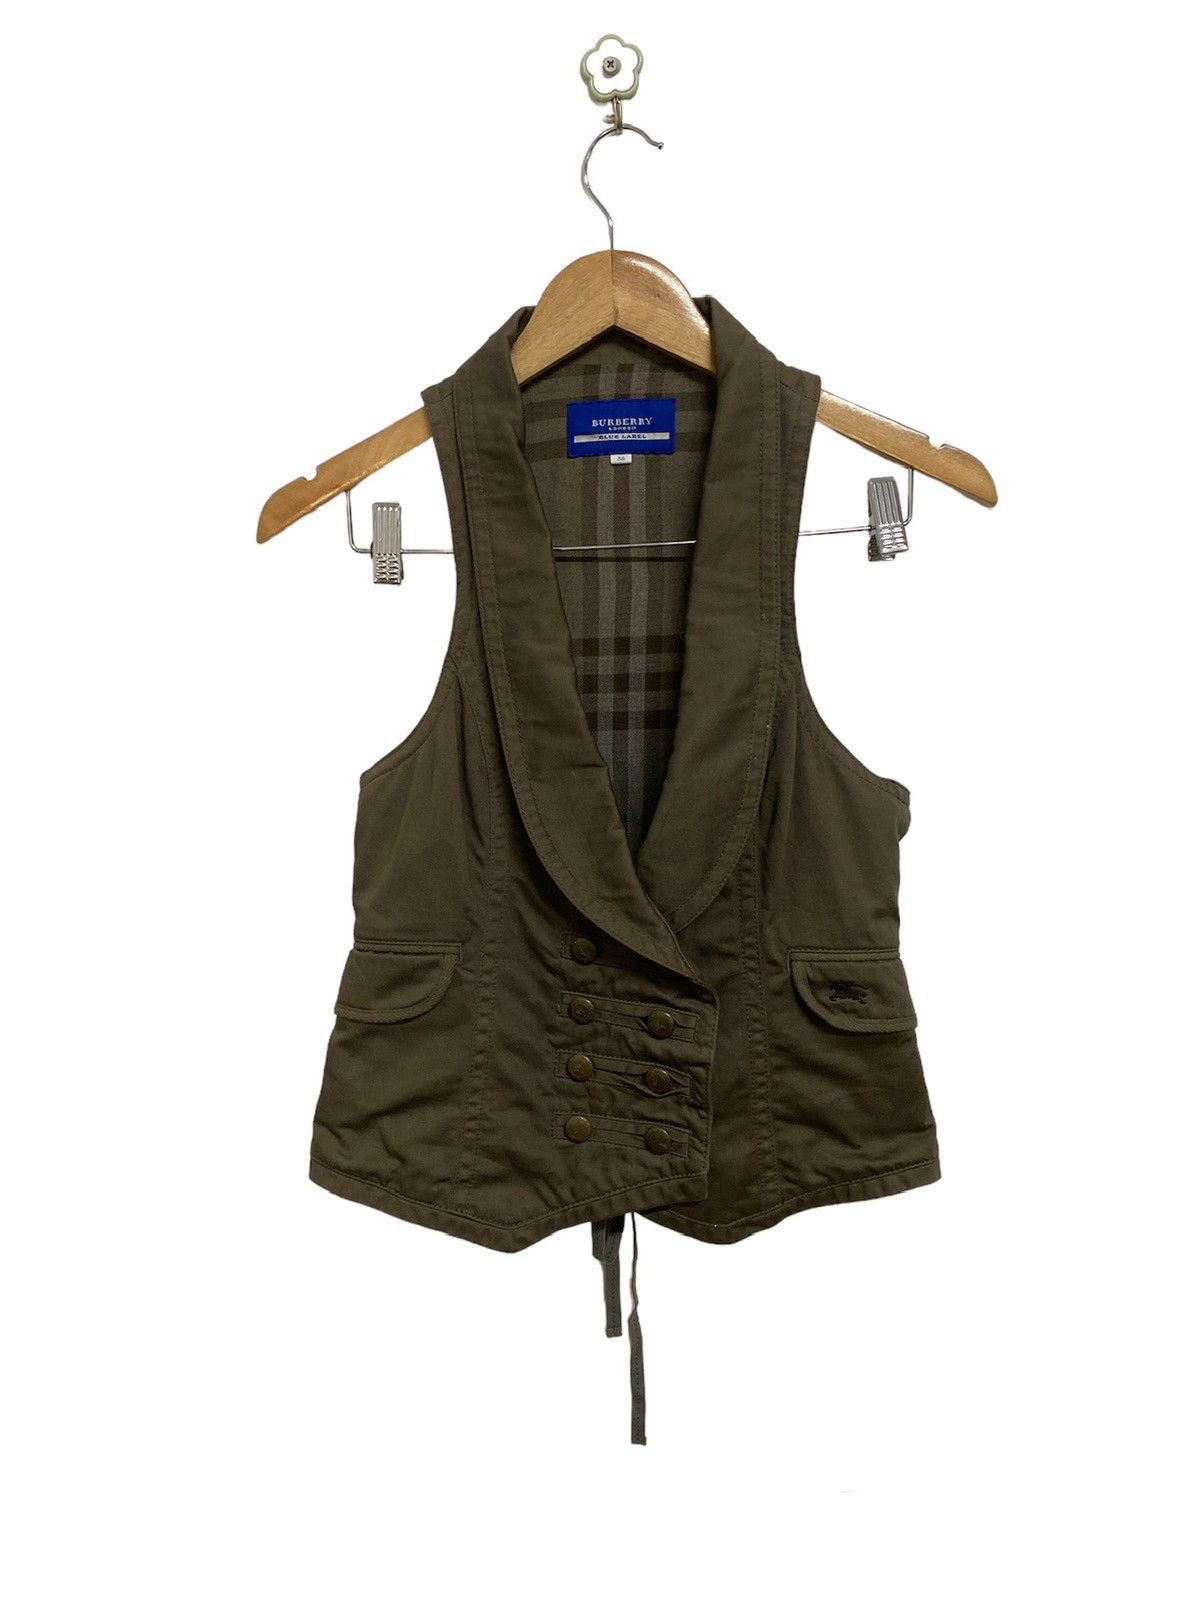 Burberry Blue Label Nova Check Vest Jacket Size 38 - 1